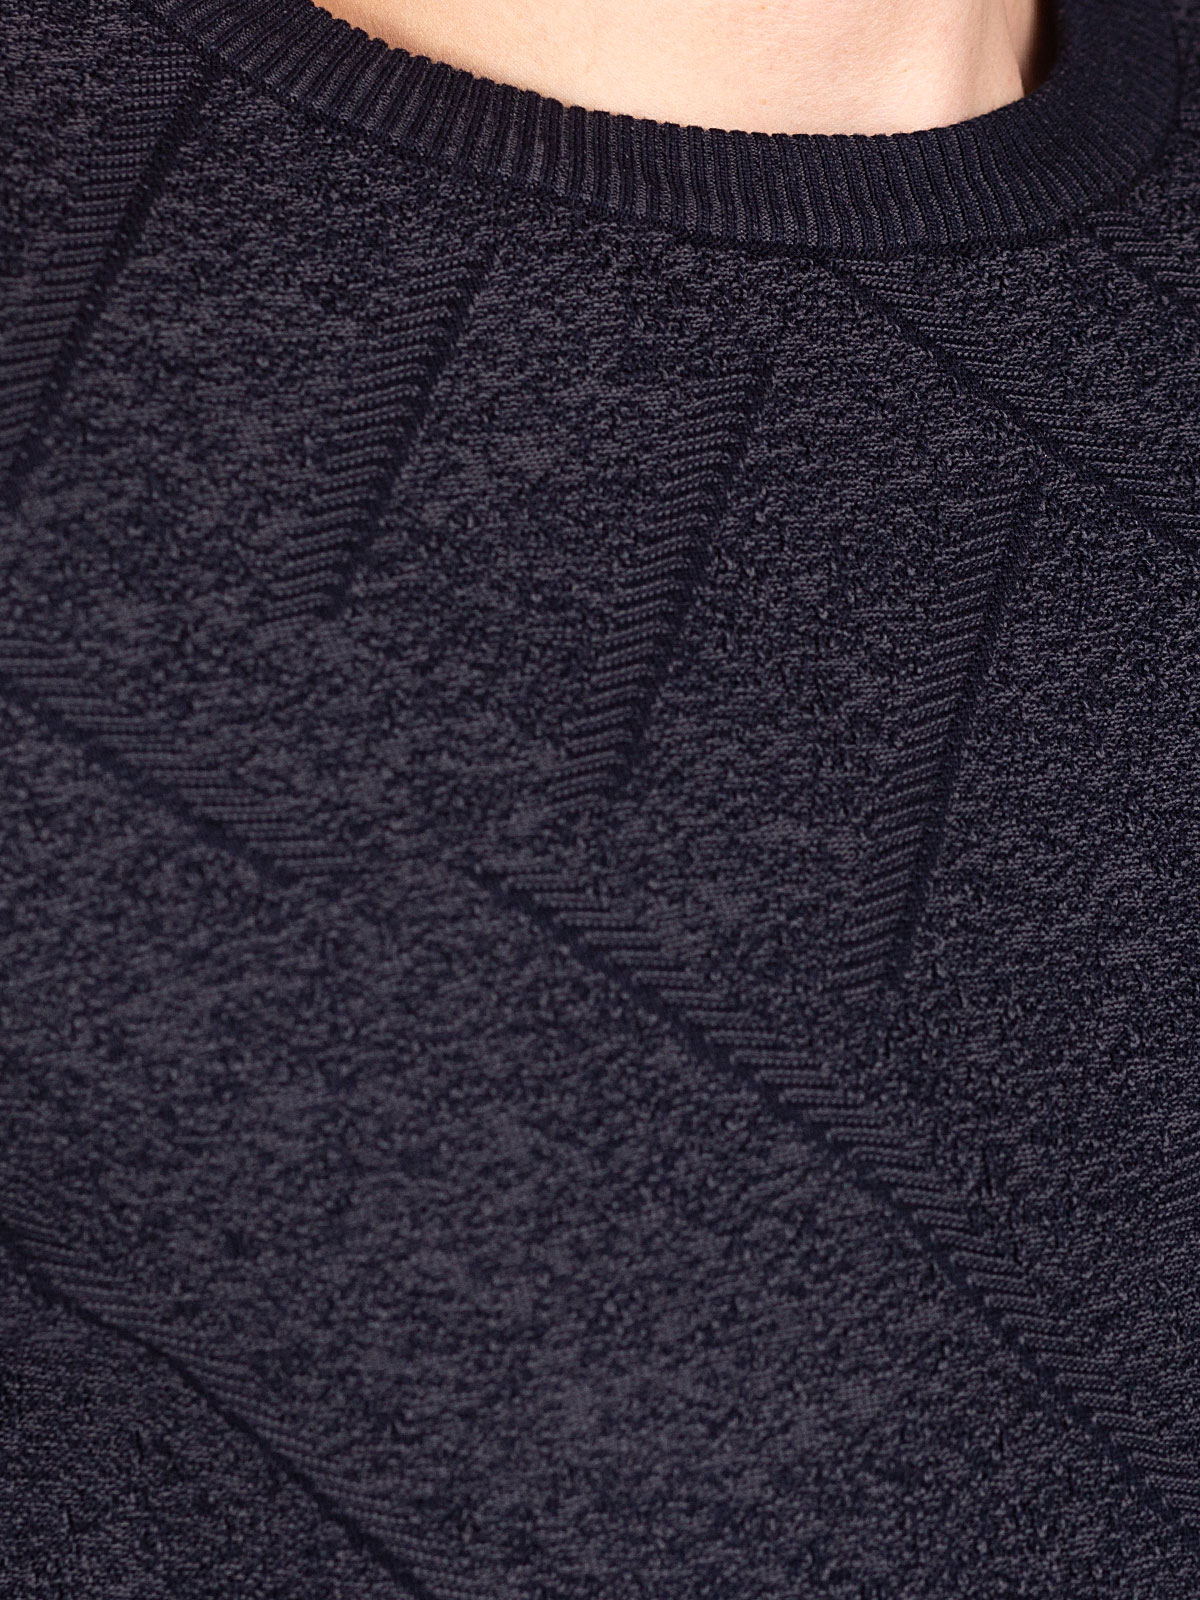 Пуловер в синьо сив меланж - 35308 82.00 лв img4